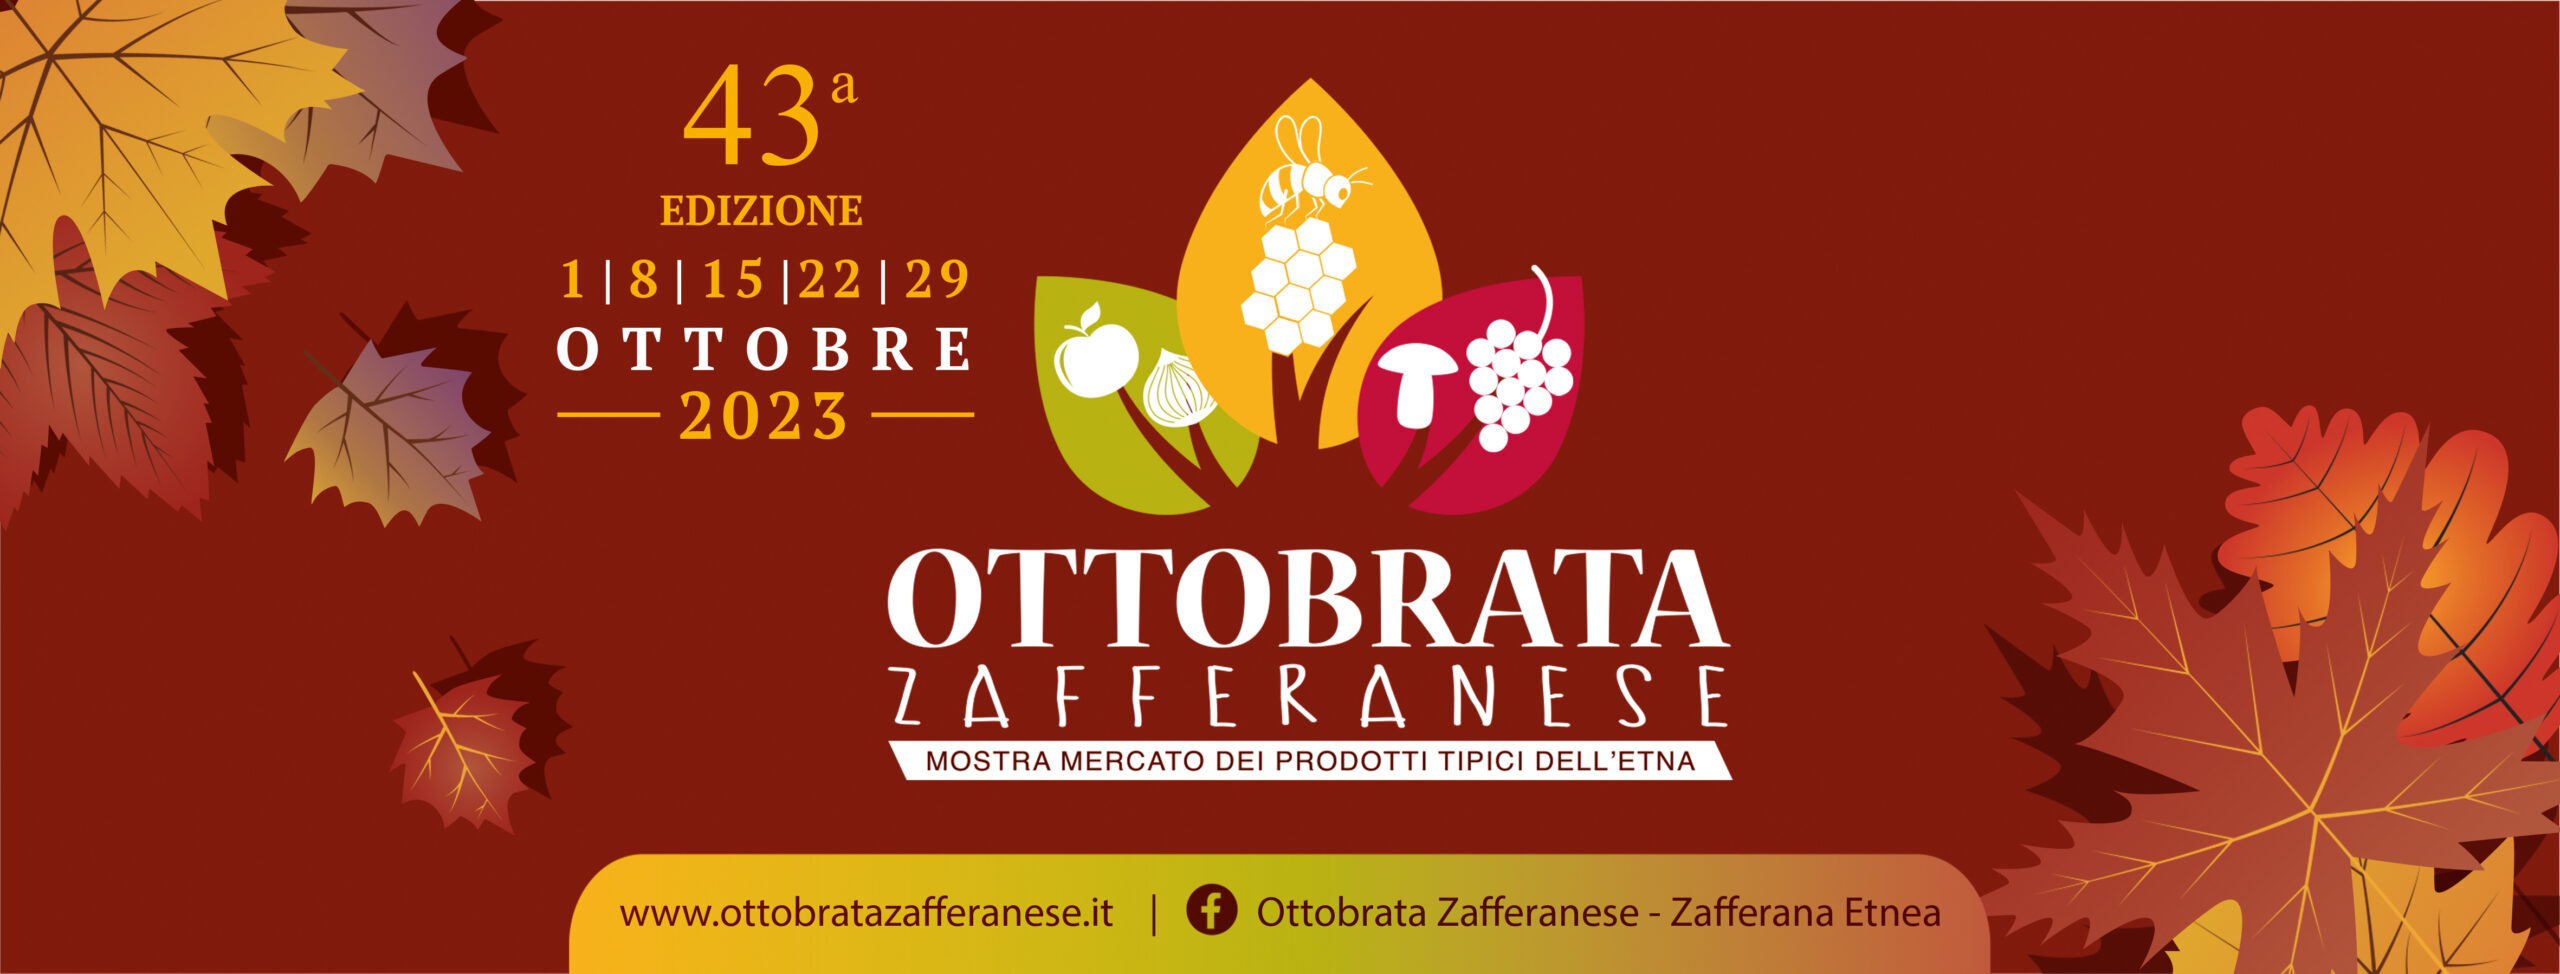 Ottobrata Zafferanese 2023